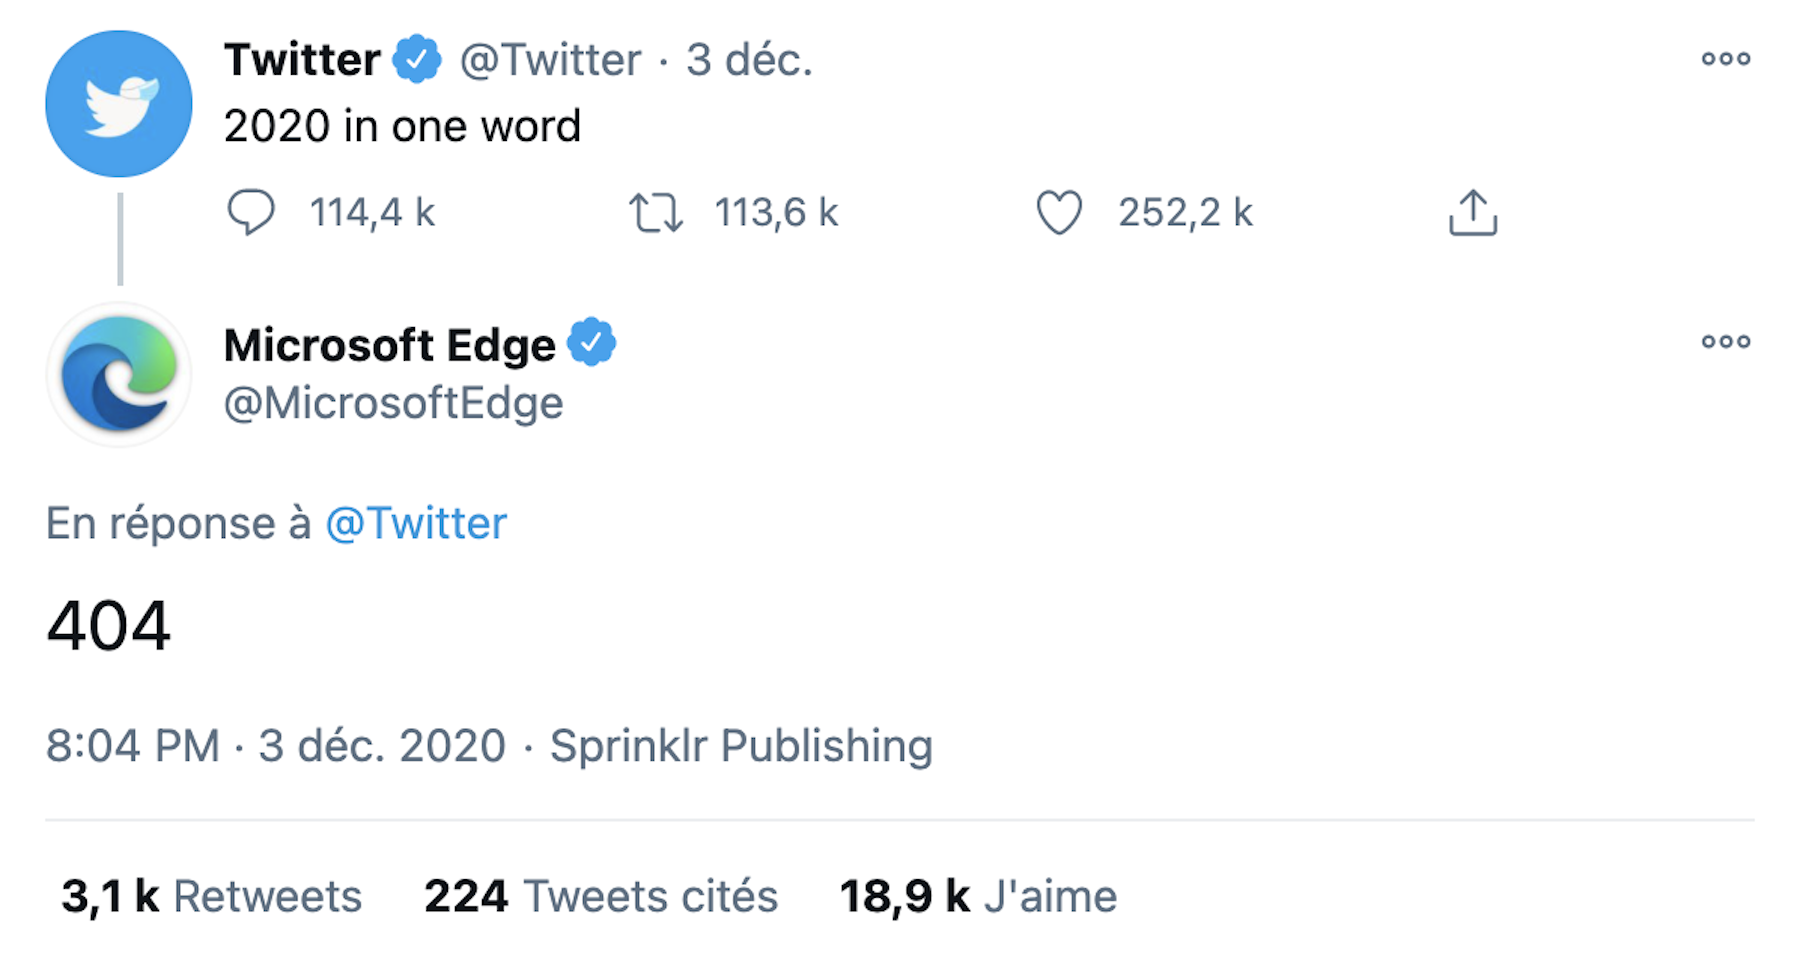 Twitter demande de résumer 2020 en un mot : les marques répondent avec humour